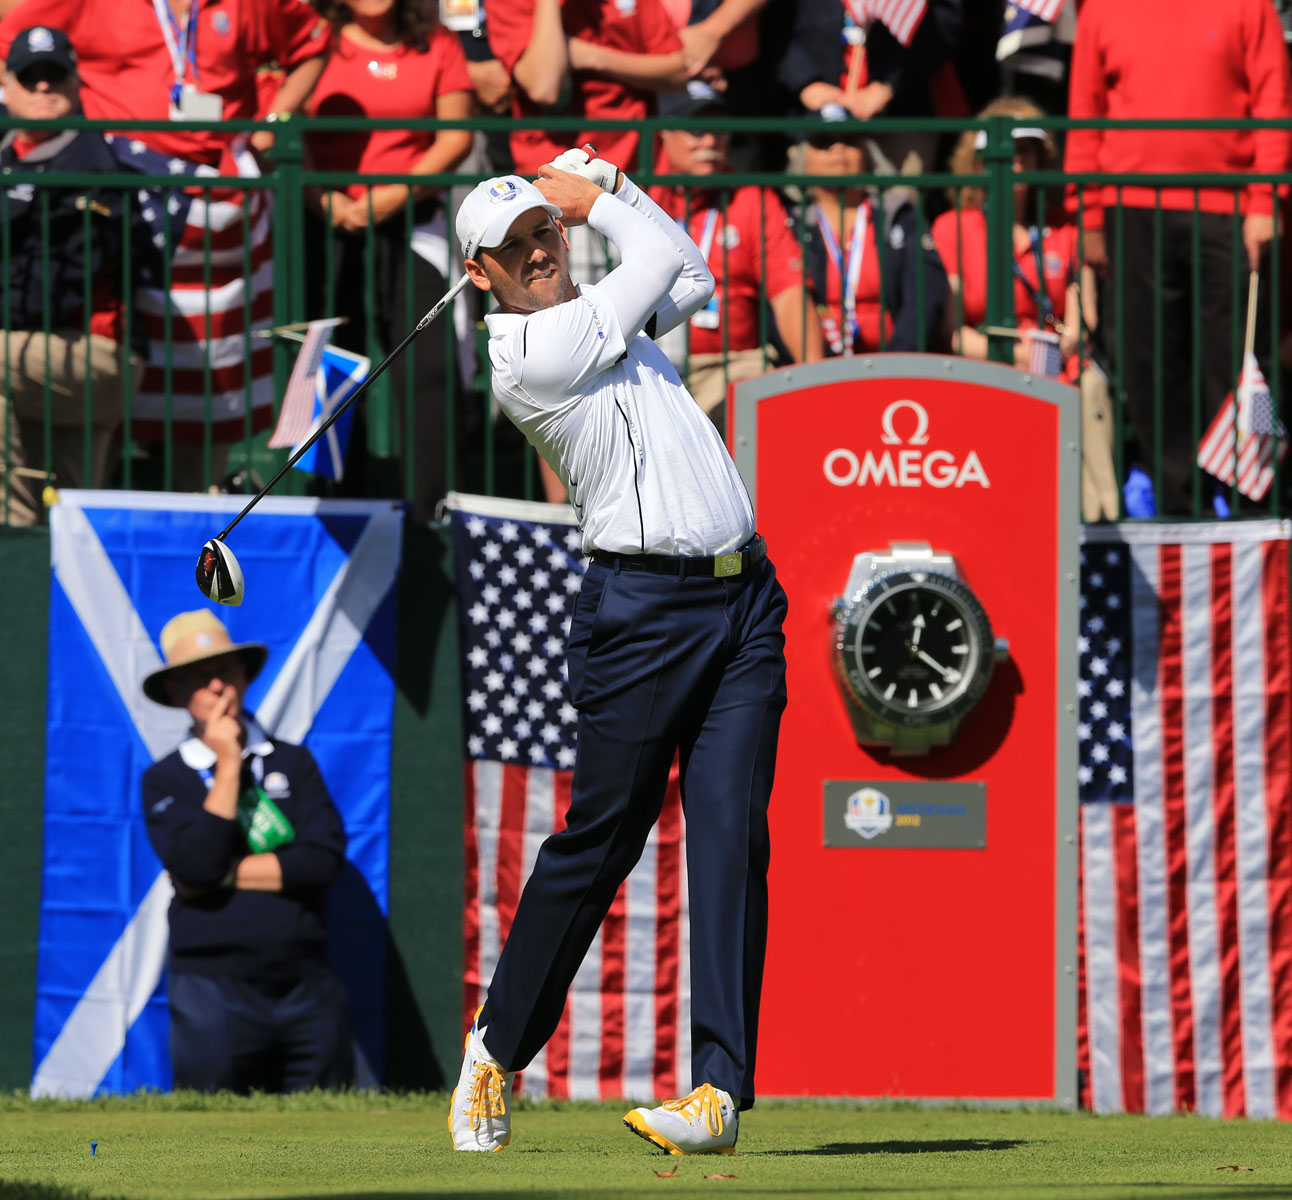 Omega góp mặt trong các giải đấu golf danh giá PGA của Mỹ